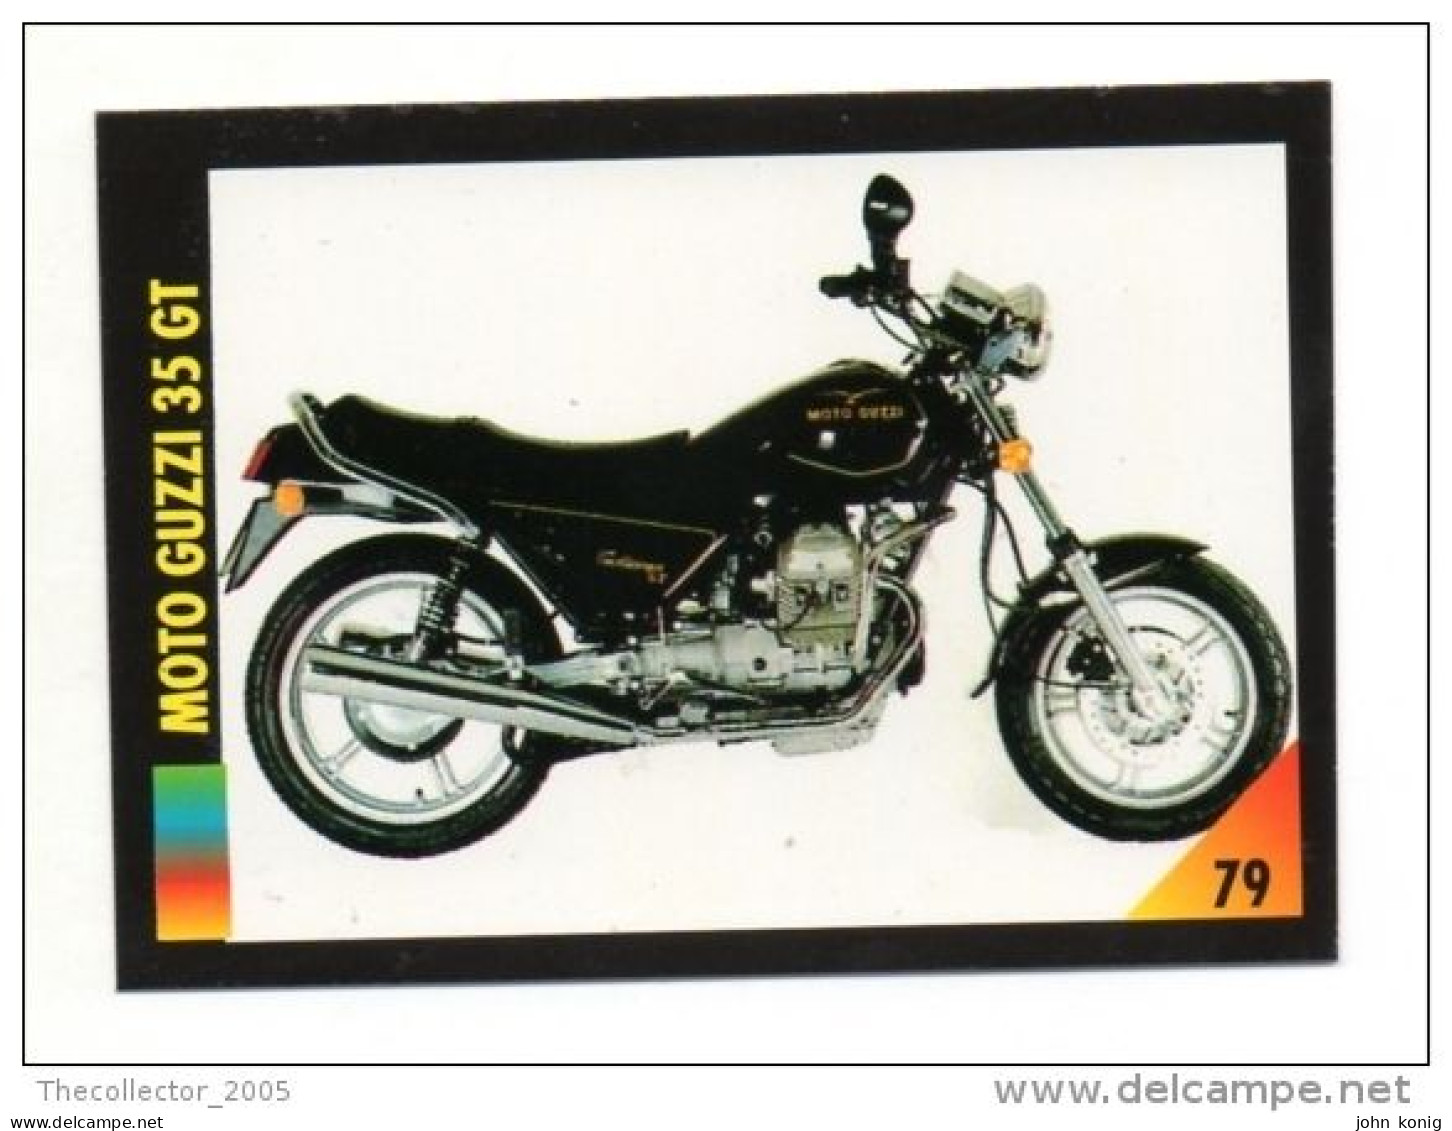 FIGURINA TRADING CARDS - LA MIA MOTO - MY MOTORBIKE - MASTERS EDIZIONI (1993) - MOTO GUZZI 35 GT - Auto & Verkehr